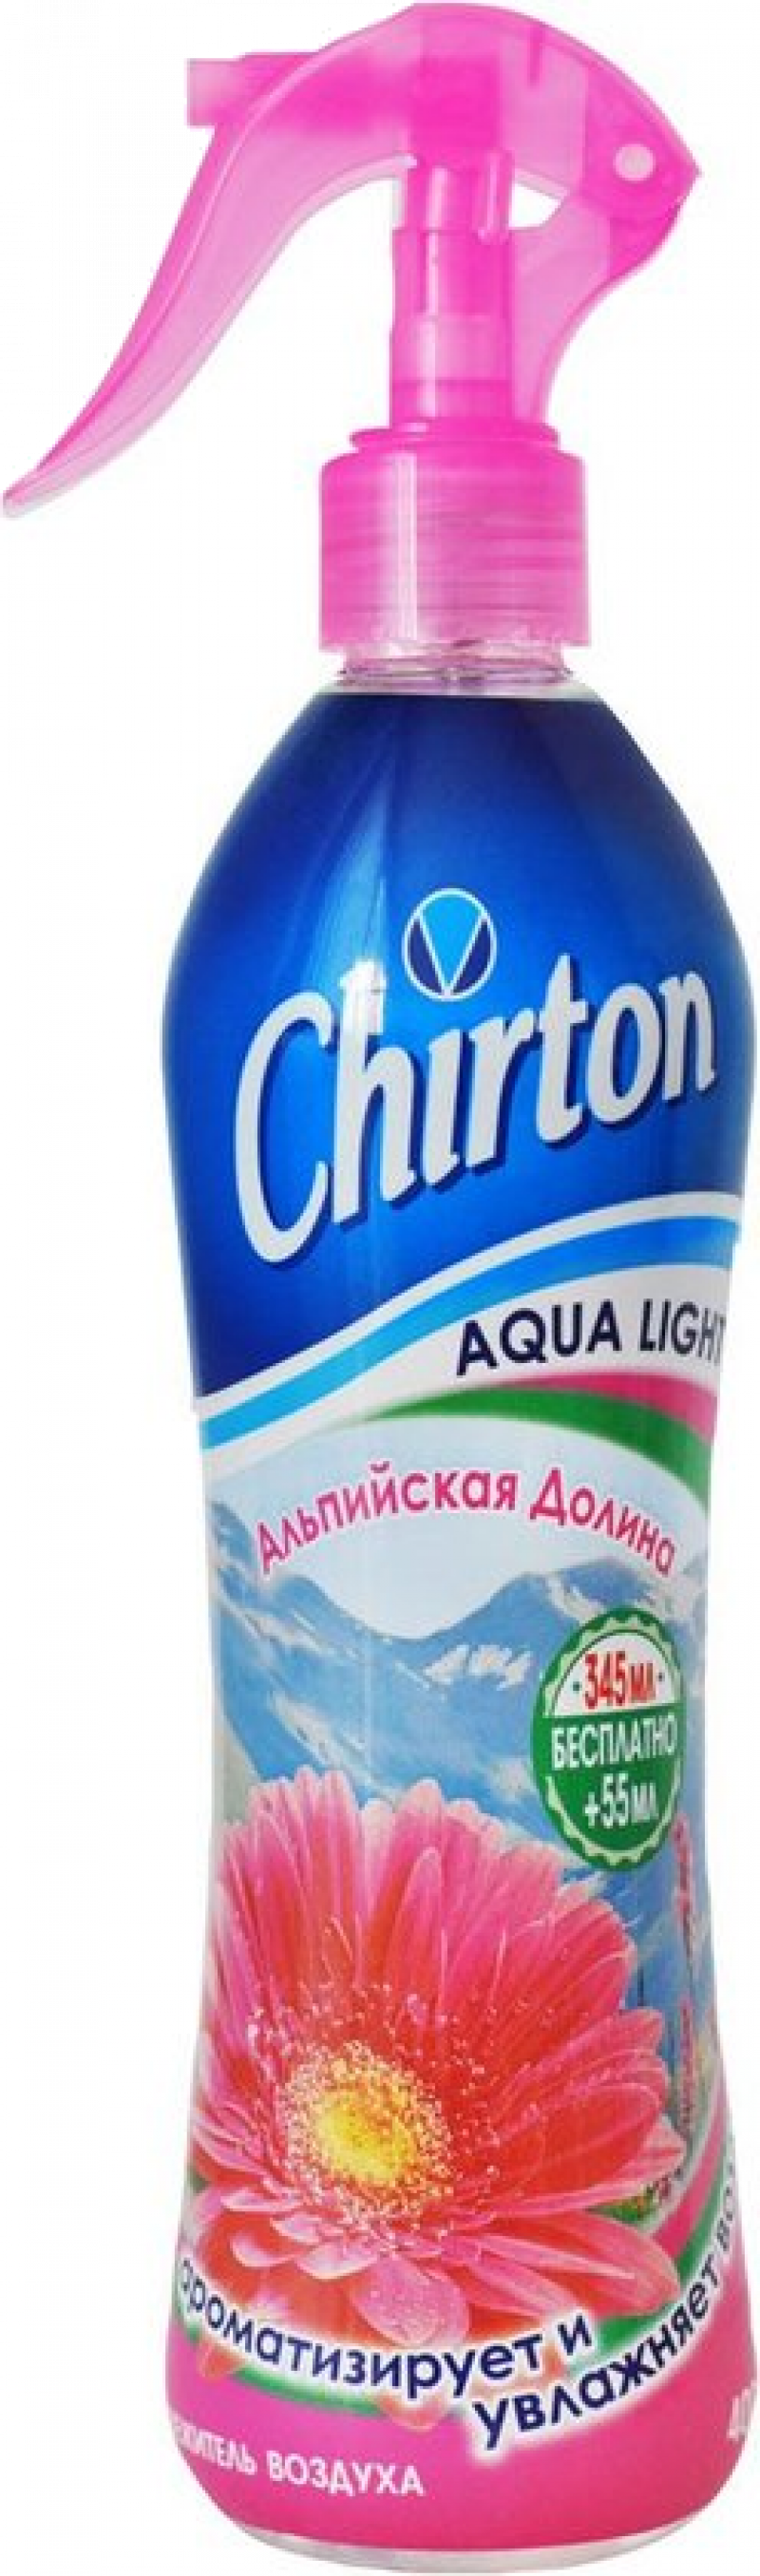 Освежитель воздуха ТМ Chirton Aqua Light альпийская долина 400мл